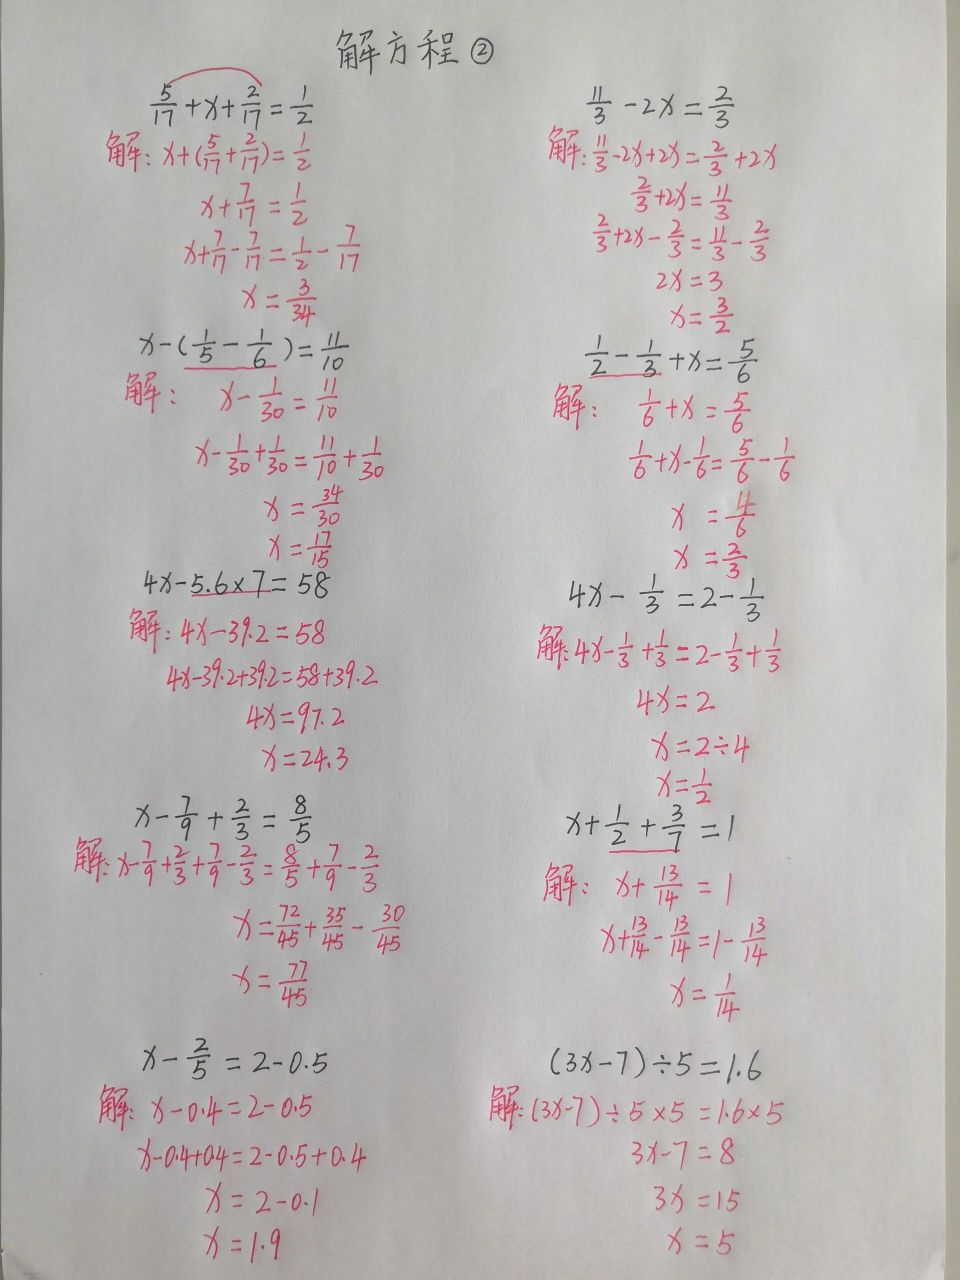 分式方程题50道及答案图片